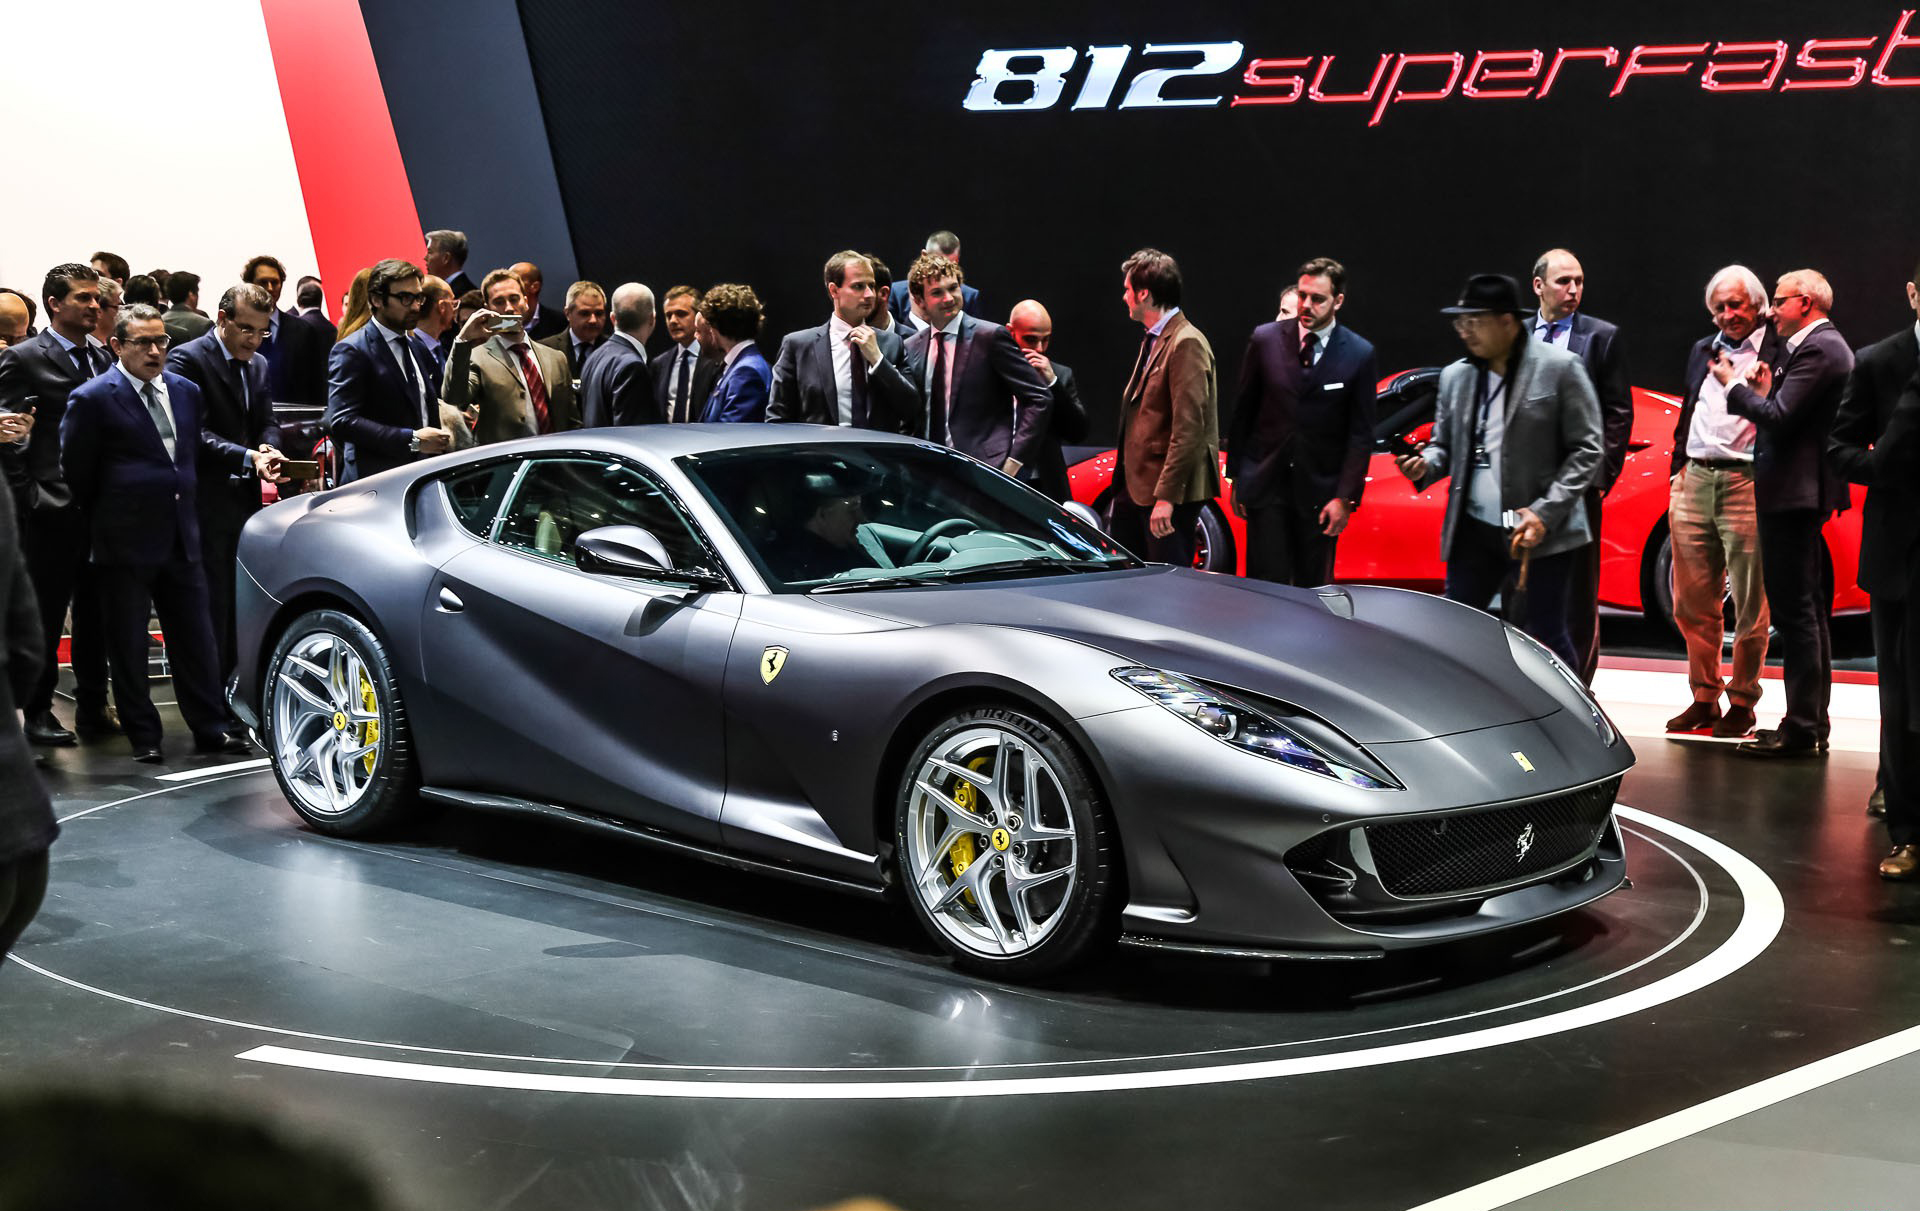 Руководитель программы двигателей Ferrari сказал, что «было бы круто» поставить турбокомпрессор на V12.